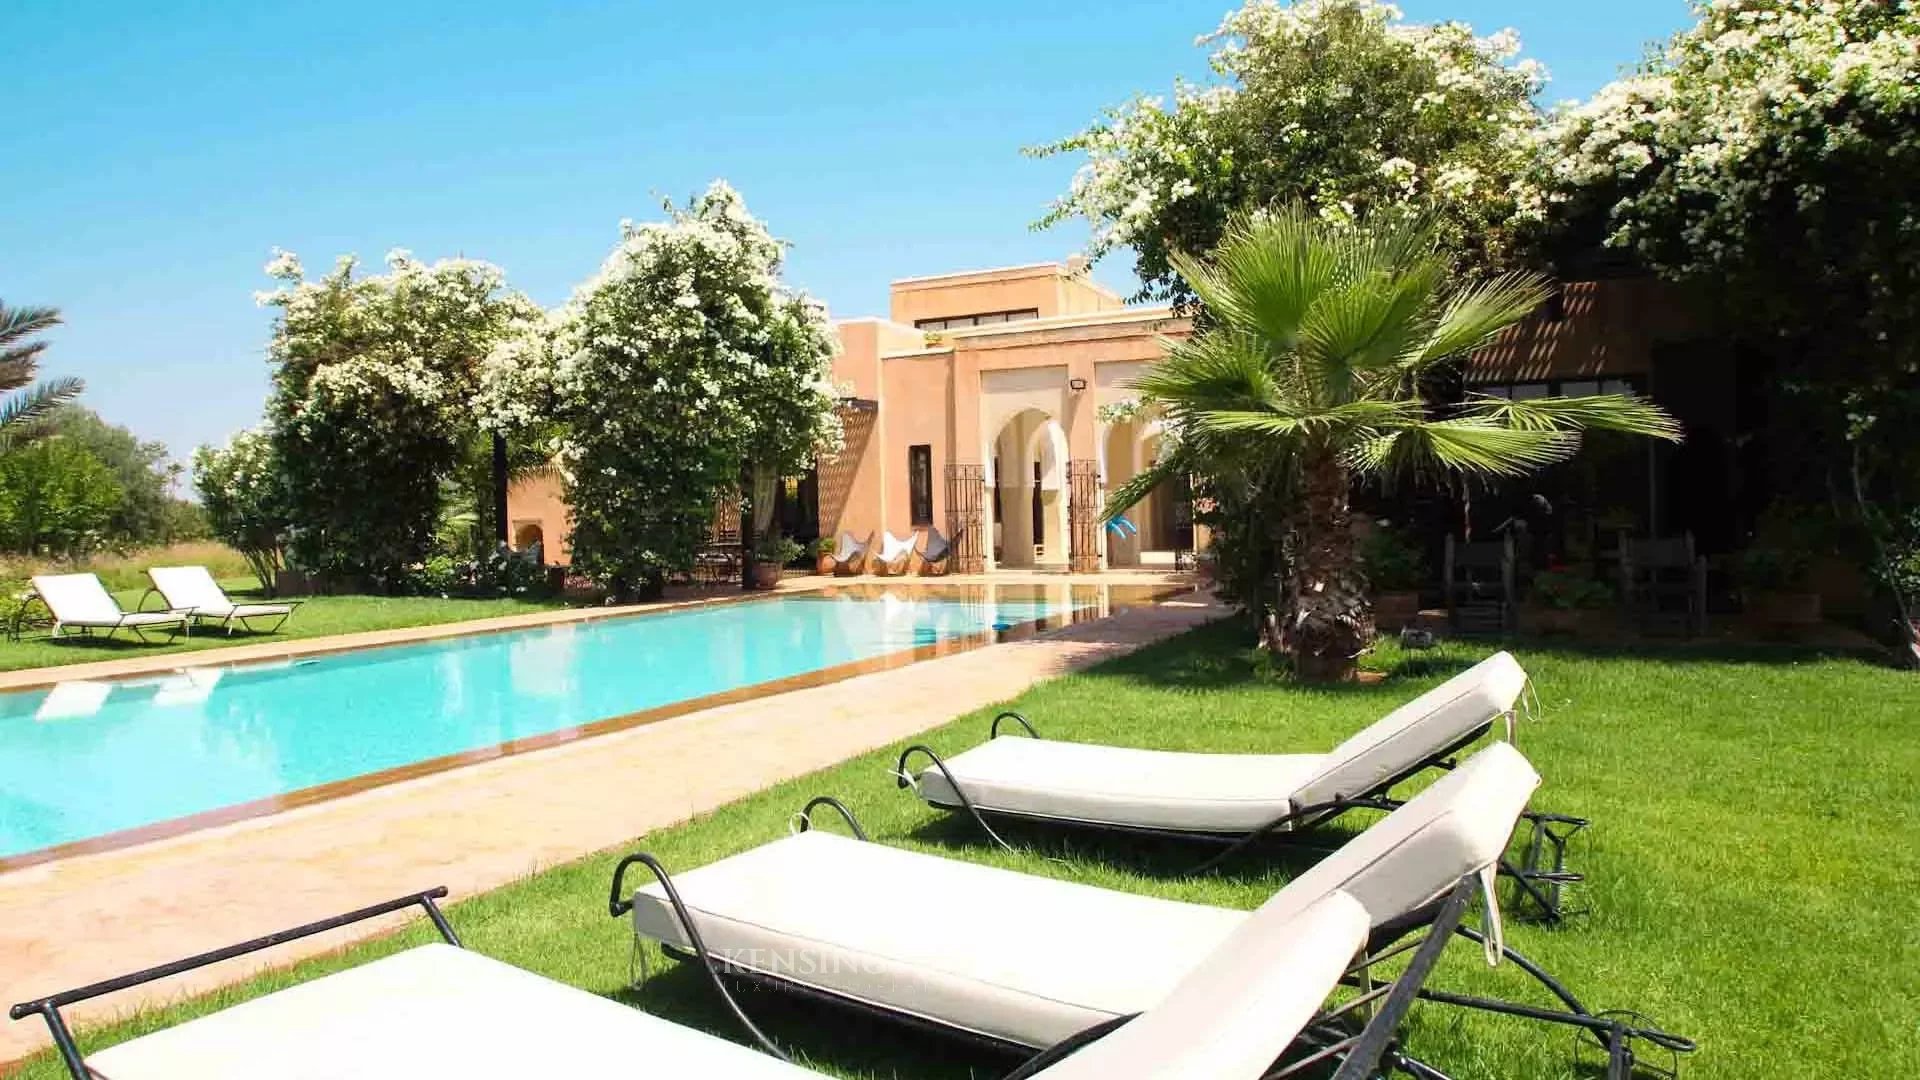 Villa Cetus in Marrakech, Morocco